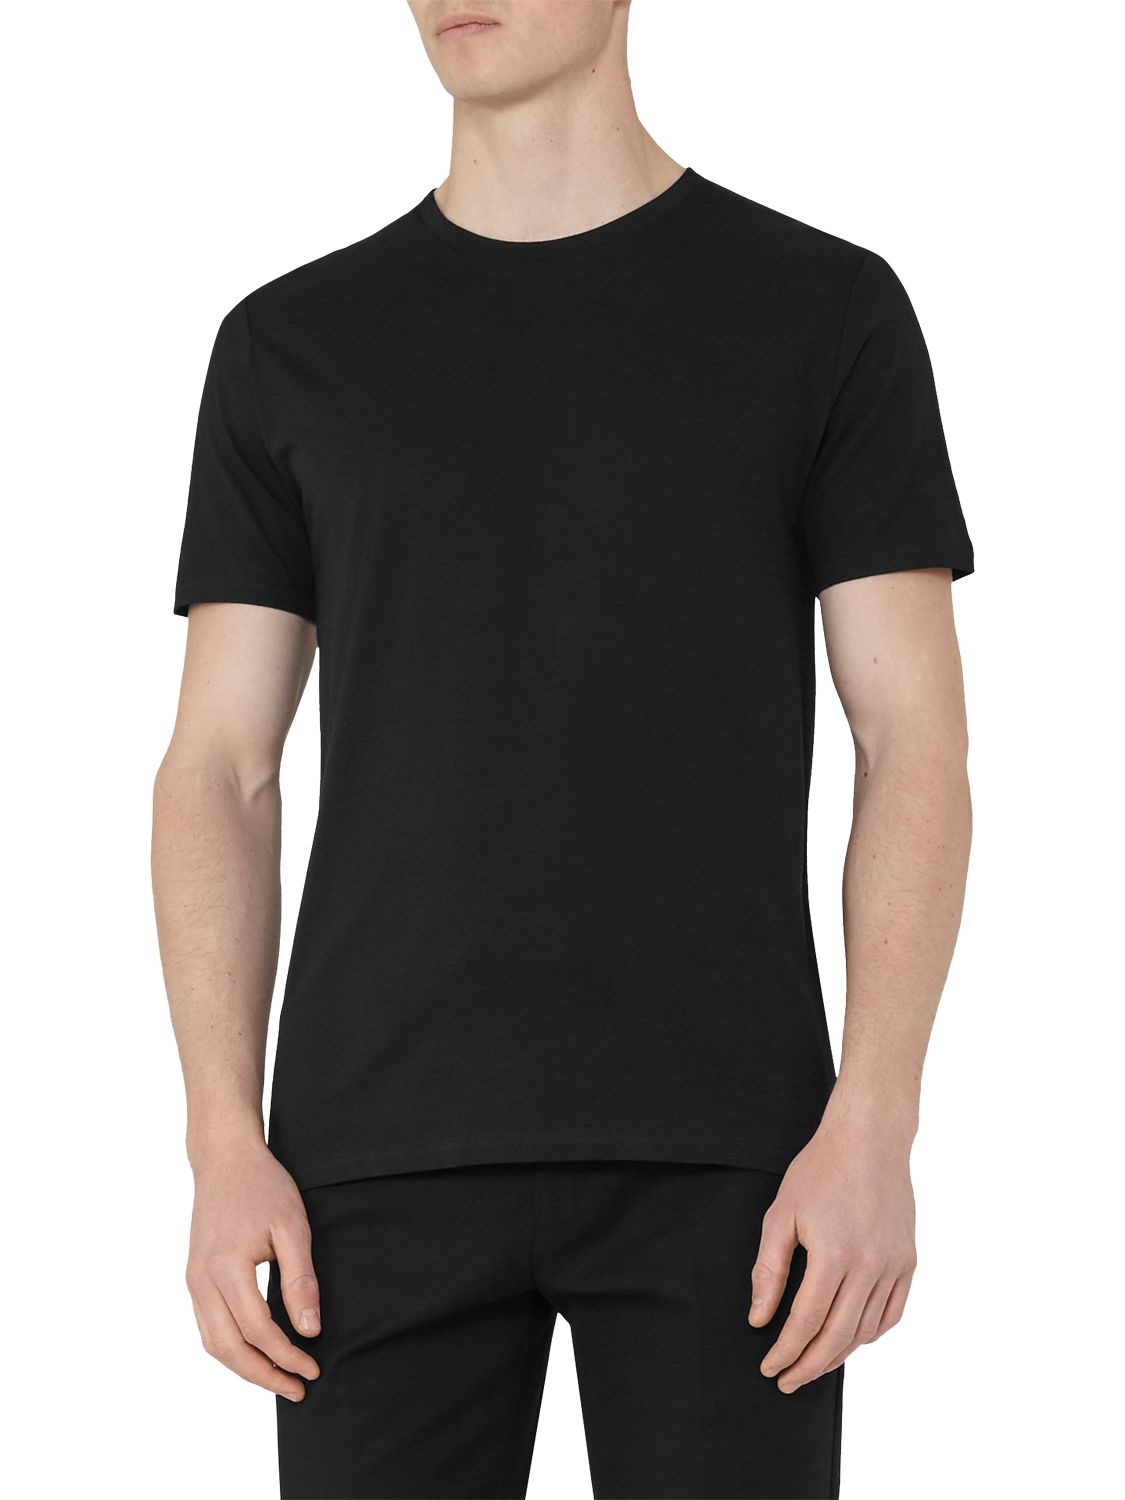 Reiss Bless Short Sleeve Cotton T-Shirt, Black